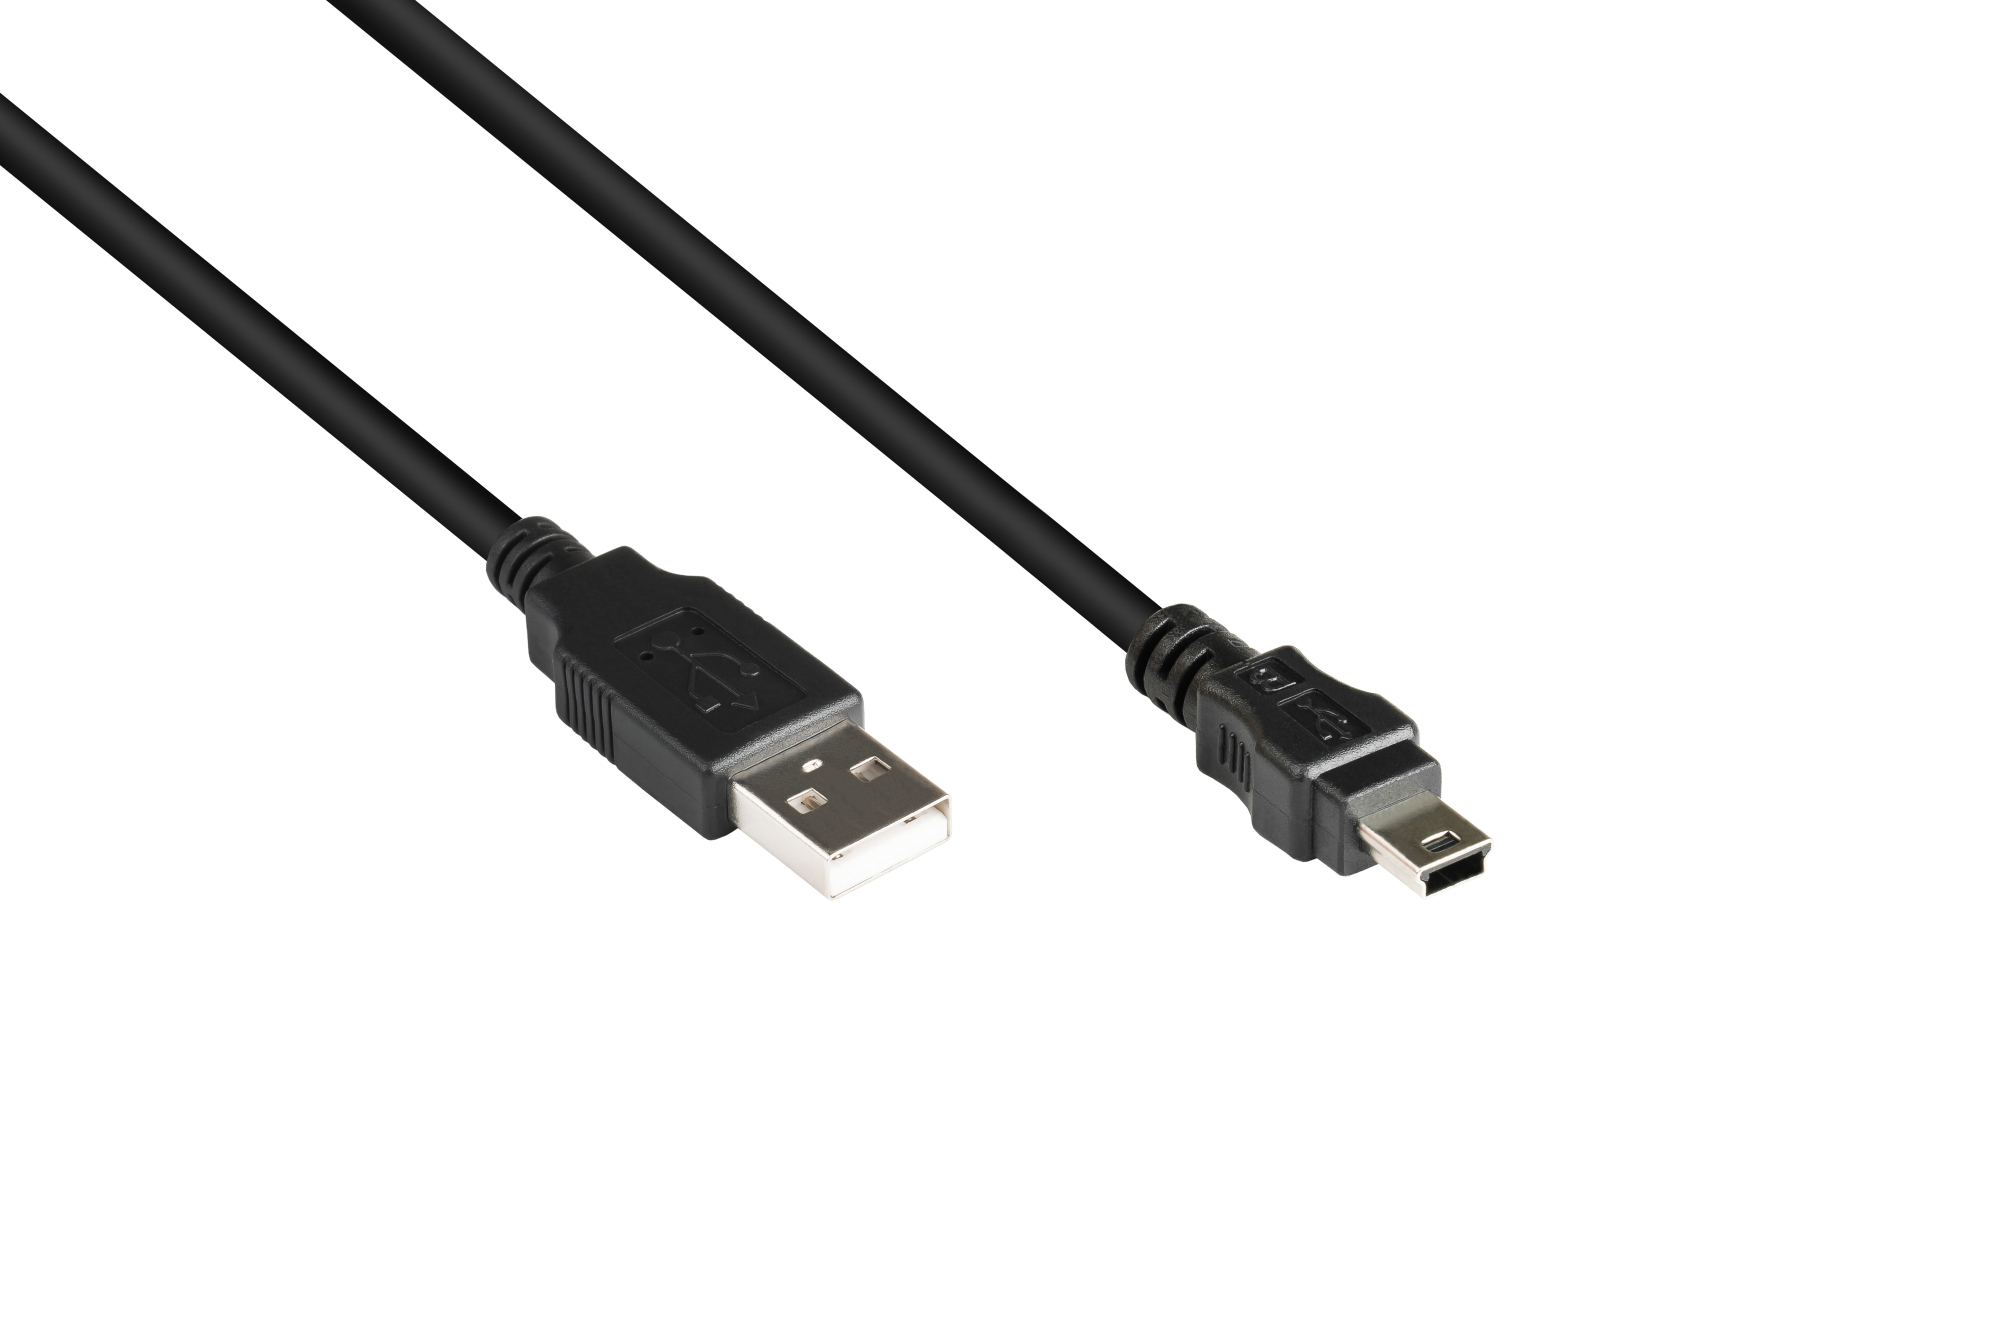 Anschlusskabel USB 2.0 Stecker A an Stecker Mini B 5-pin, schwarz, 1m